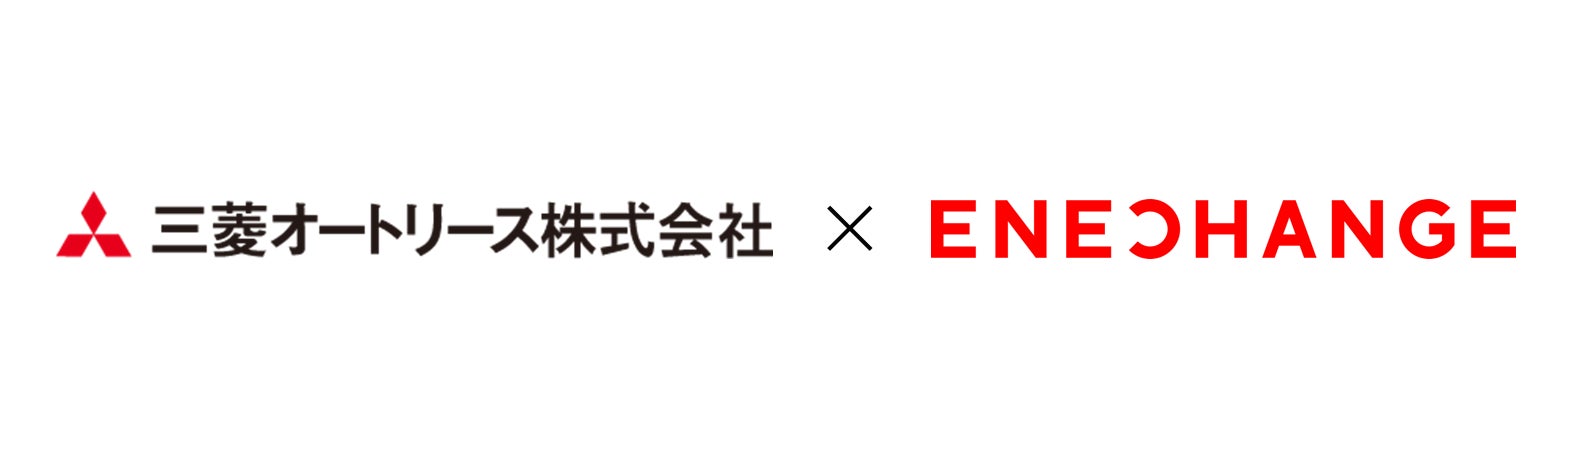 エネチェンジEV充電サービスで三菱オートリースとパートナー提携、EVシフトを推進する企業への営業連携を強化のサブ画像1